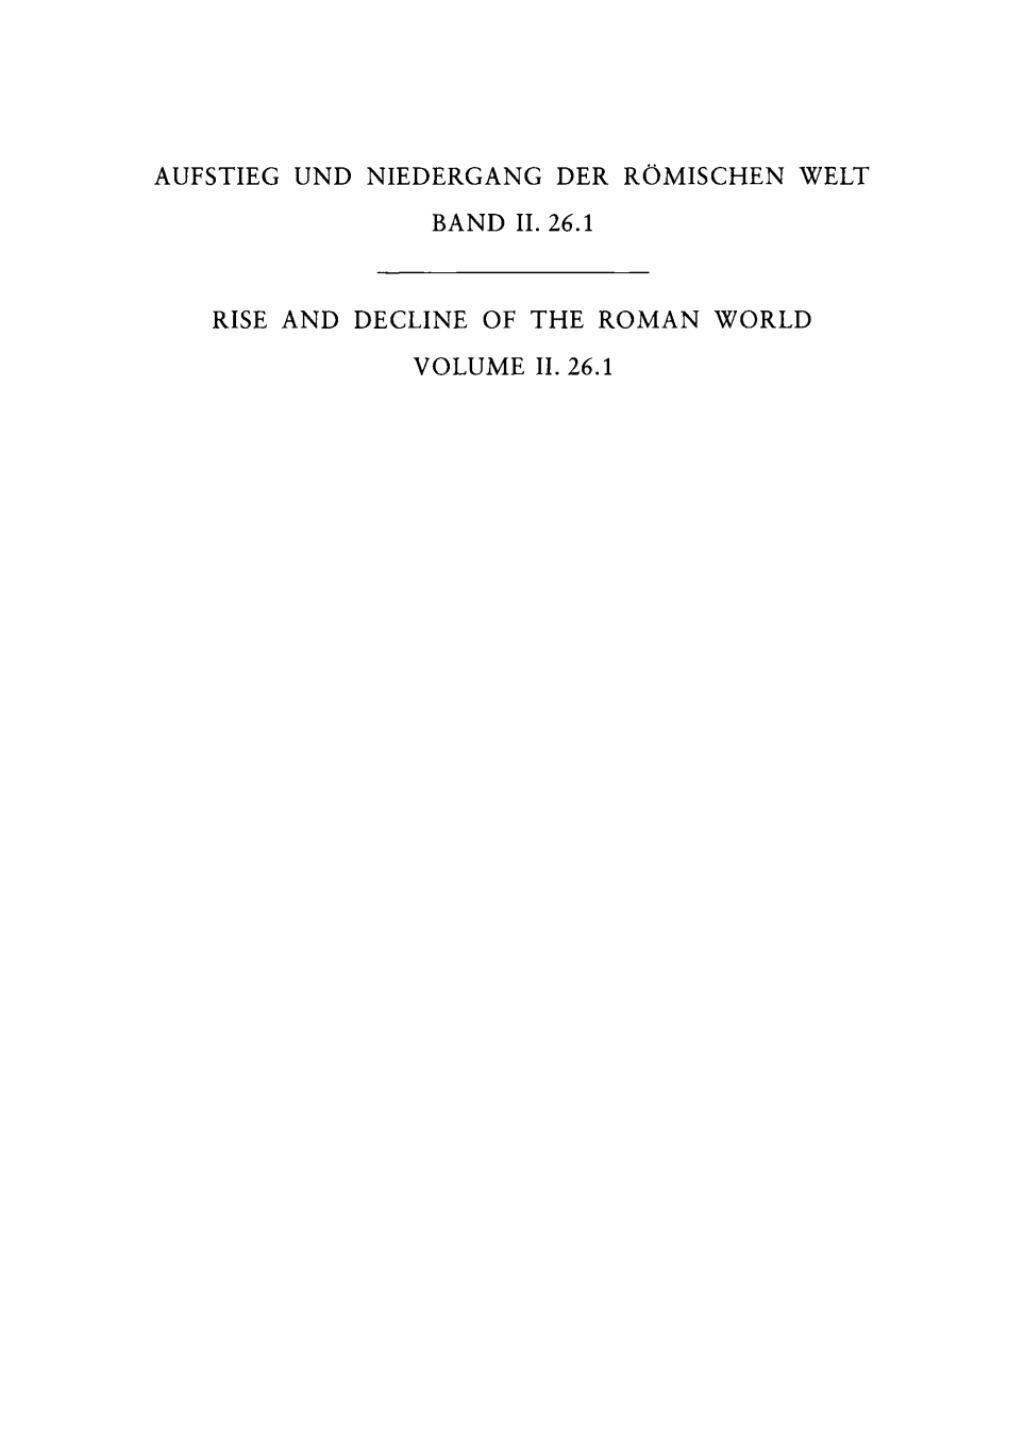 Religion (Vorkonstantinisches Christentum: Neues Testament [Sachthemen]) - 1st Edition (eBook)